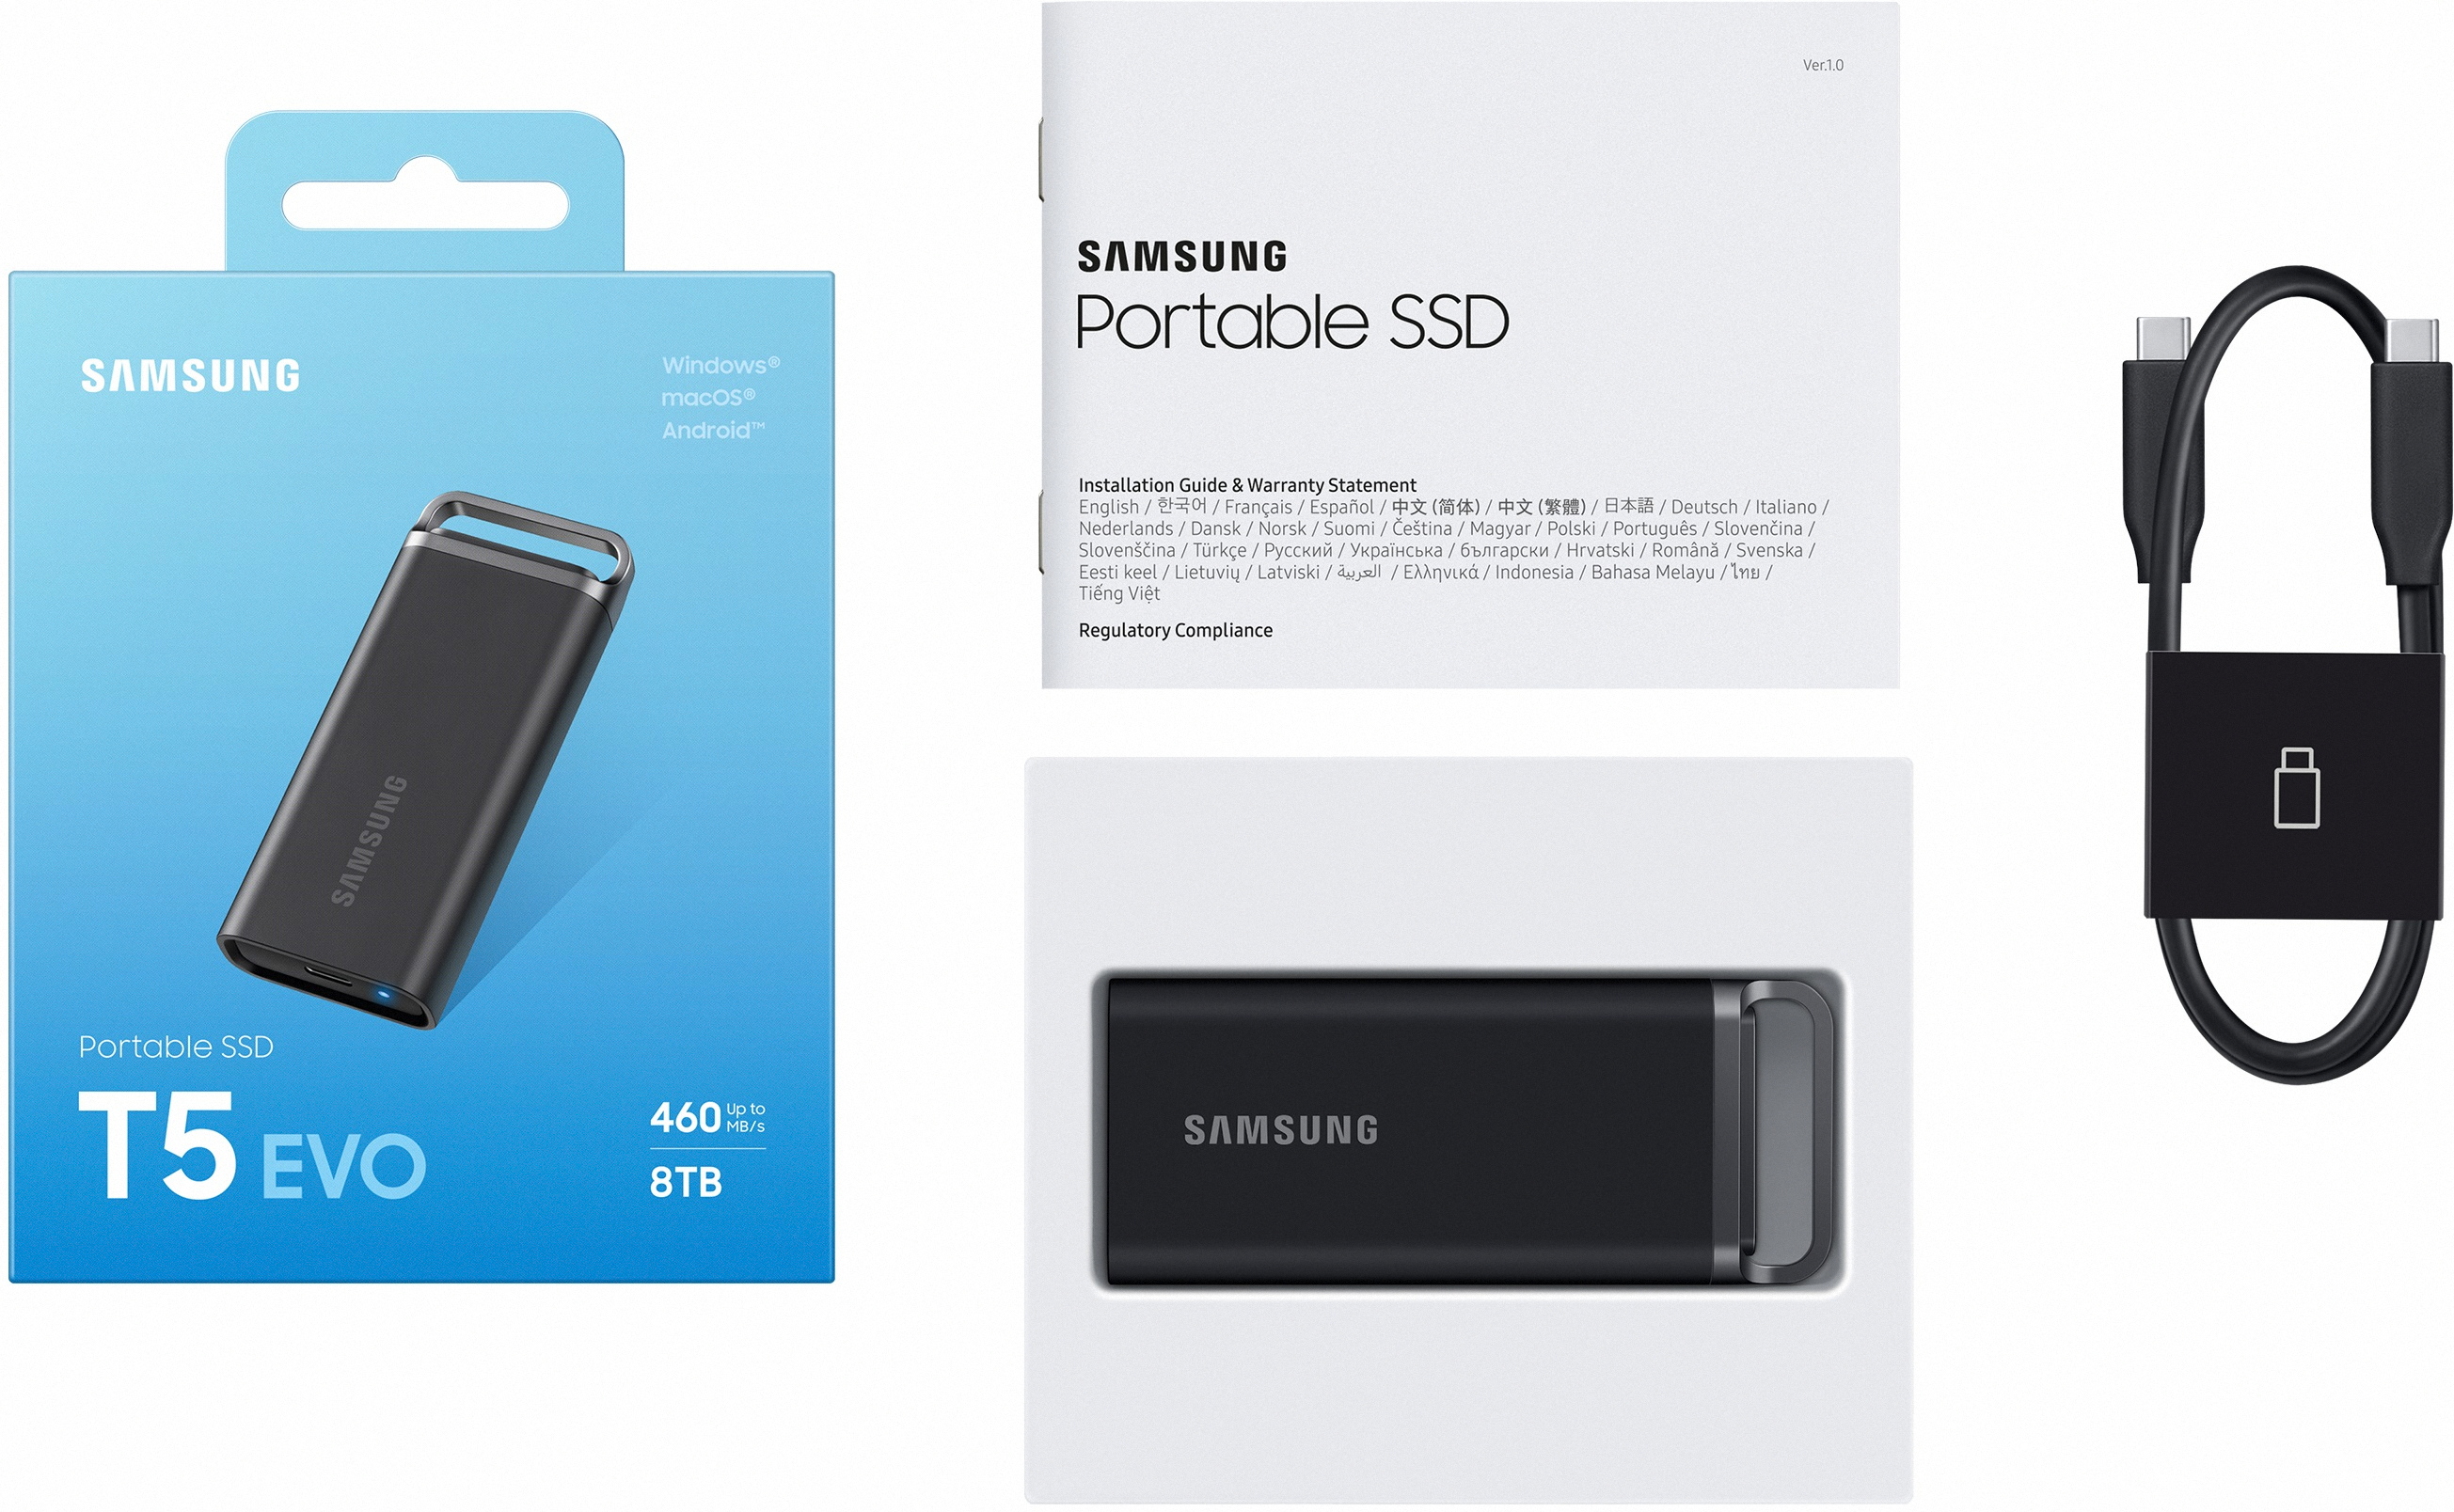 Samsung pokazał sprzęt, którego nie chcesz kupować